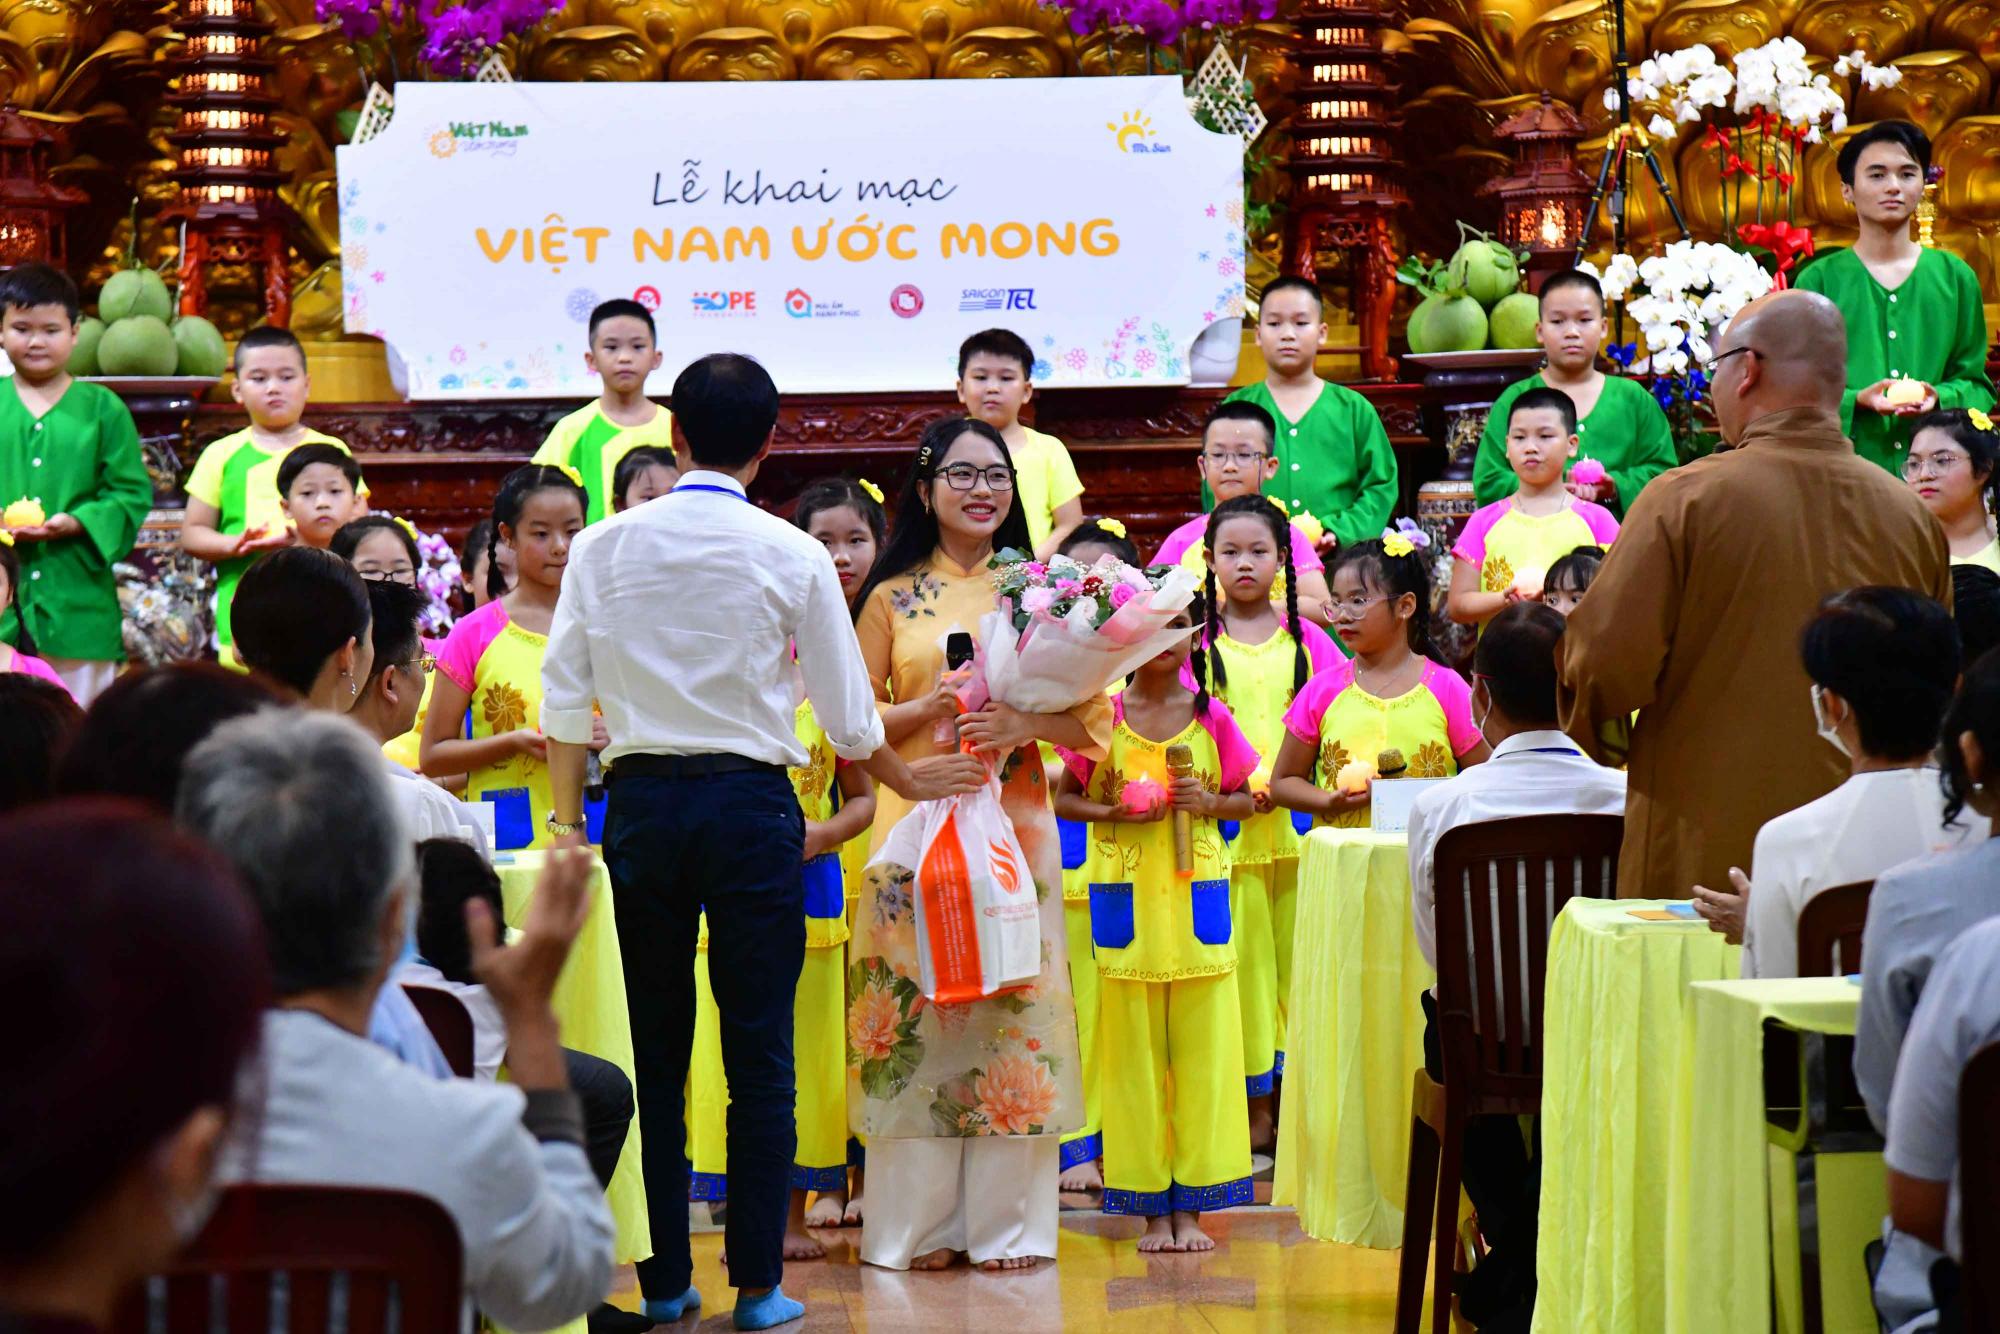 Chùa Giác Ngộ tổ chức lễ khai mạc chương trình "Việt Nam Ước Mong"